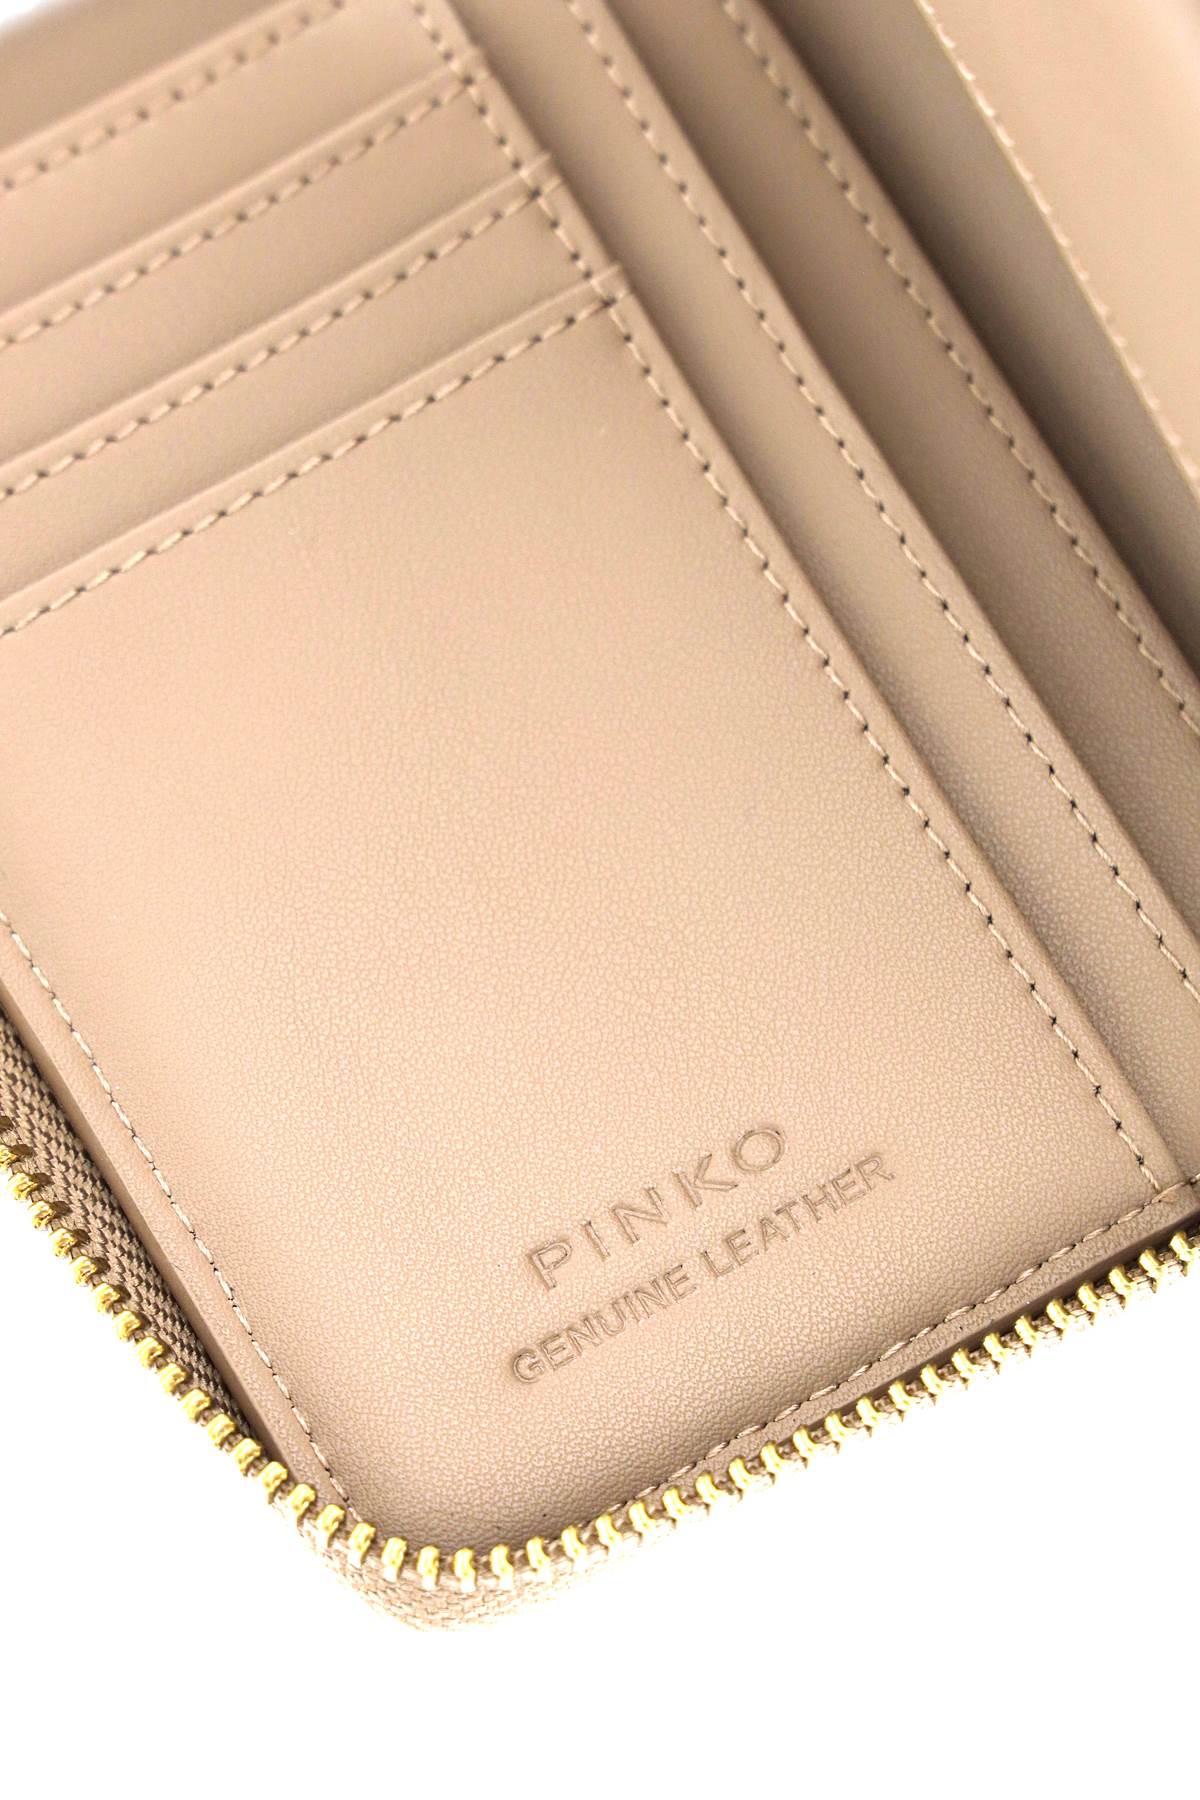 Shop Pinko Leather Zip-around Wallet In Biscotto Zenzero Antique Gold (beige)